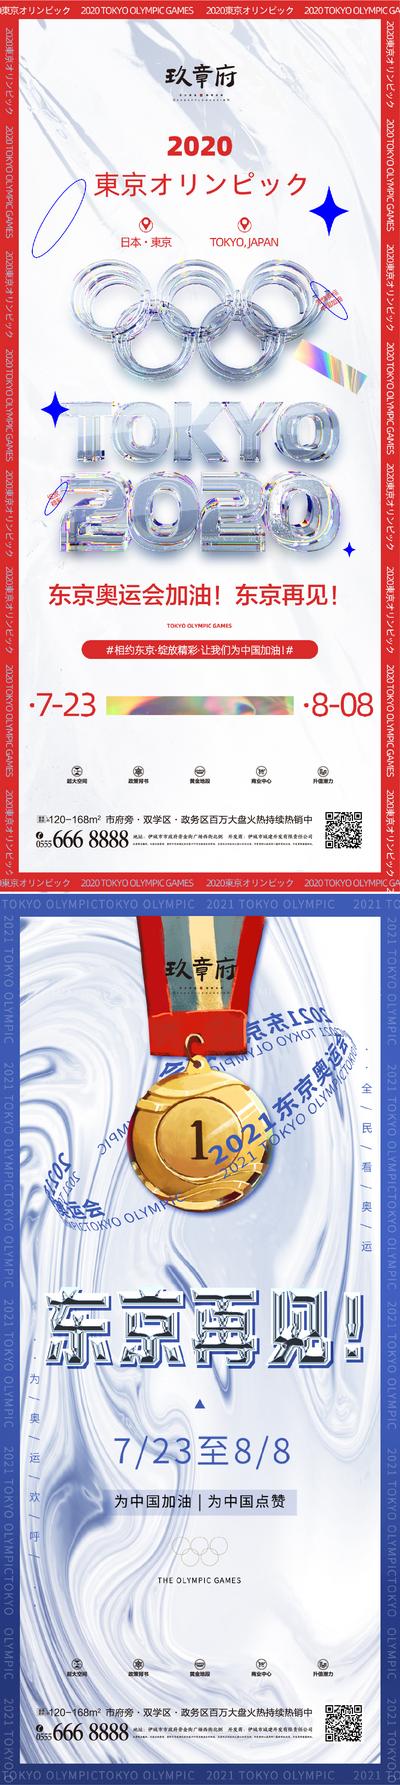 【南门网】海报 地产 奥运会 蒸汽波 酸性 镭射 五环 奖章 